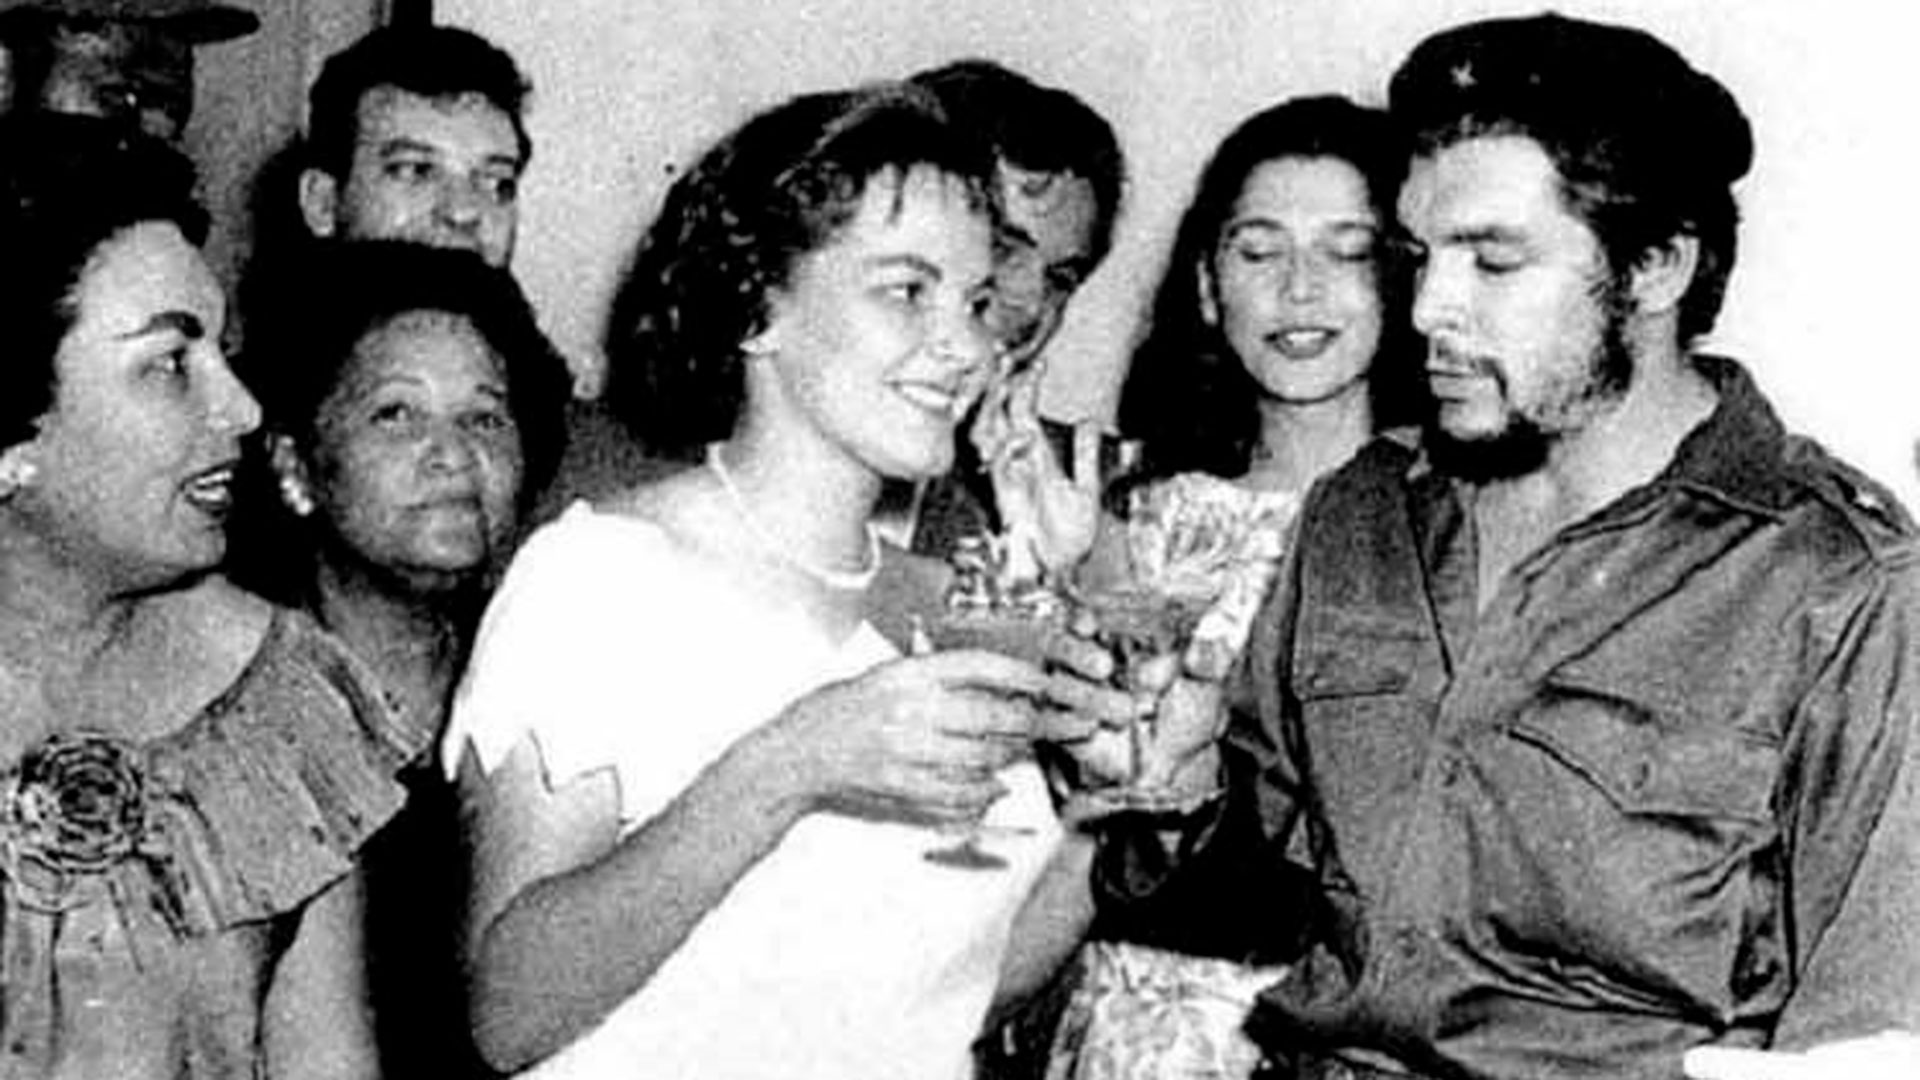 Cuando nos casamos sabías quién era yo”: las cartas, los celos y el amor  tormentoso del Che Guevara y Aleida March - Infobae